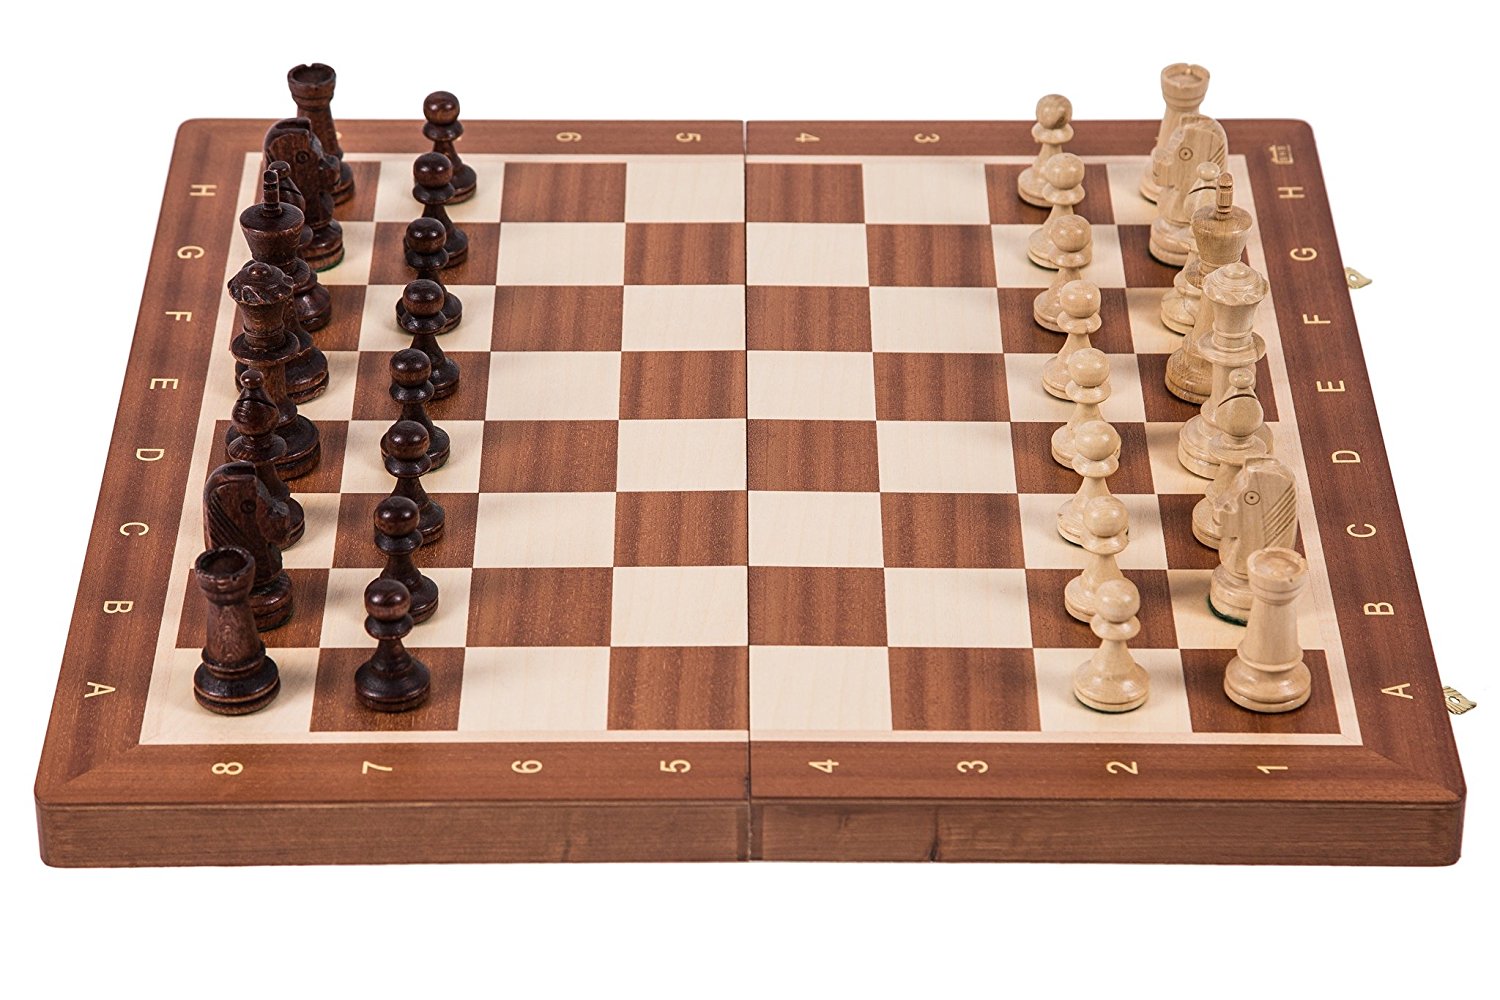 tablero de ajedrez de madera